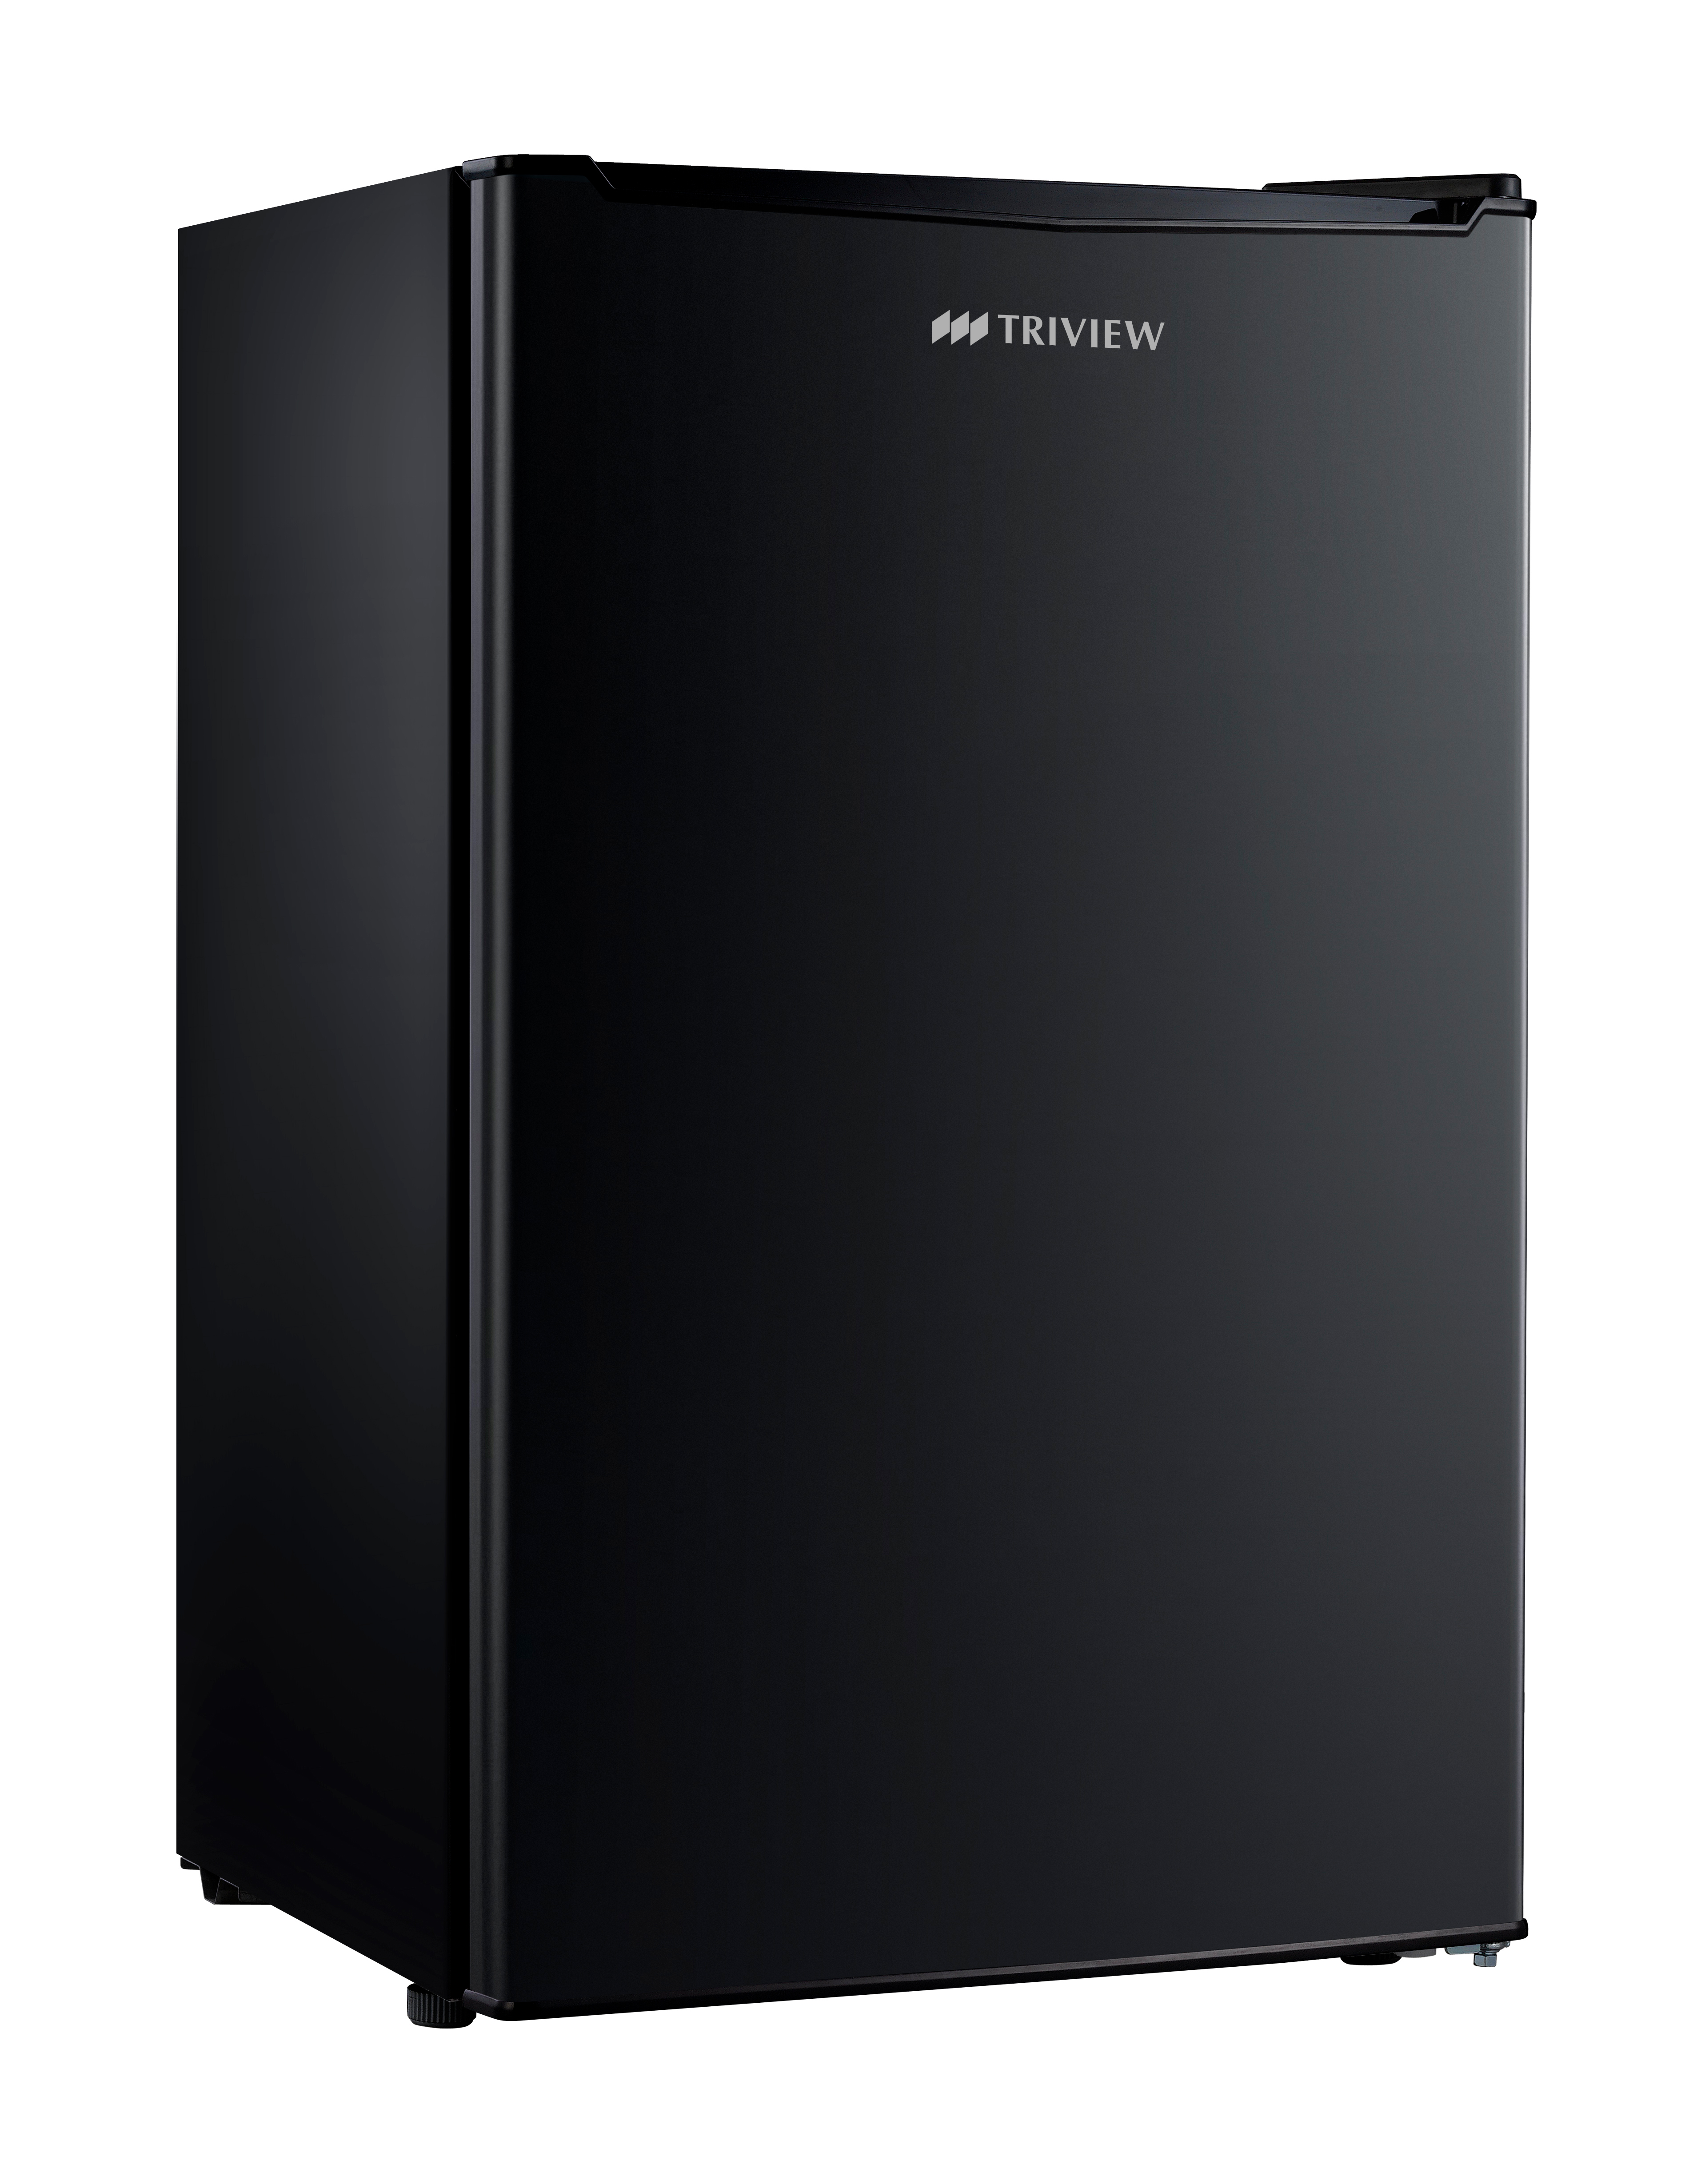 Triview (Tatung) 3.5 cu. Ft. Compact All Refrigerator- No Freezer